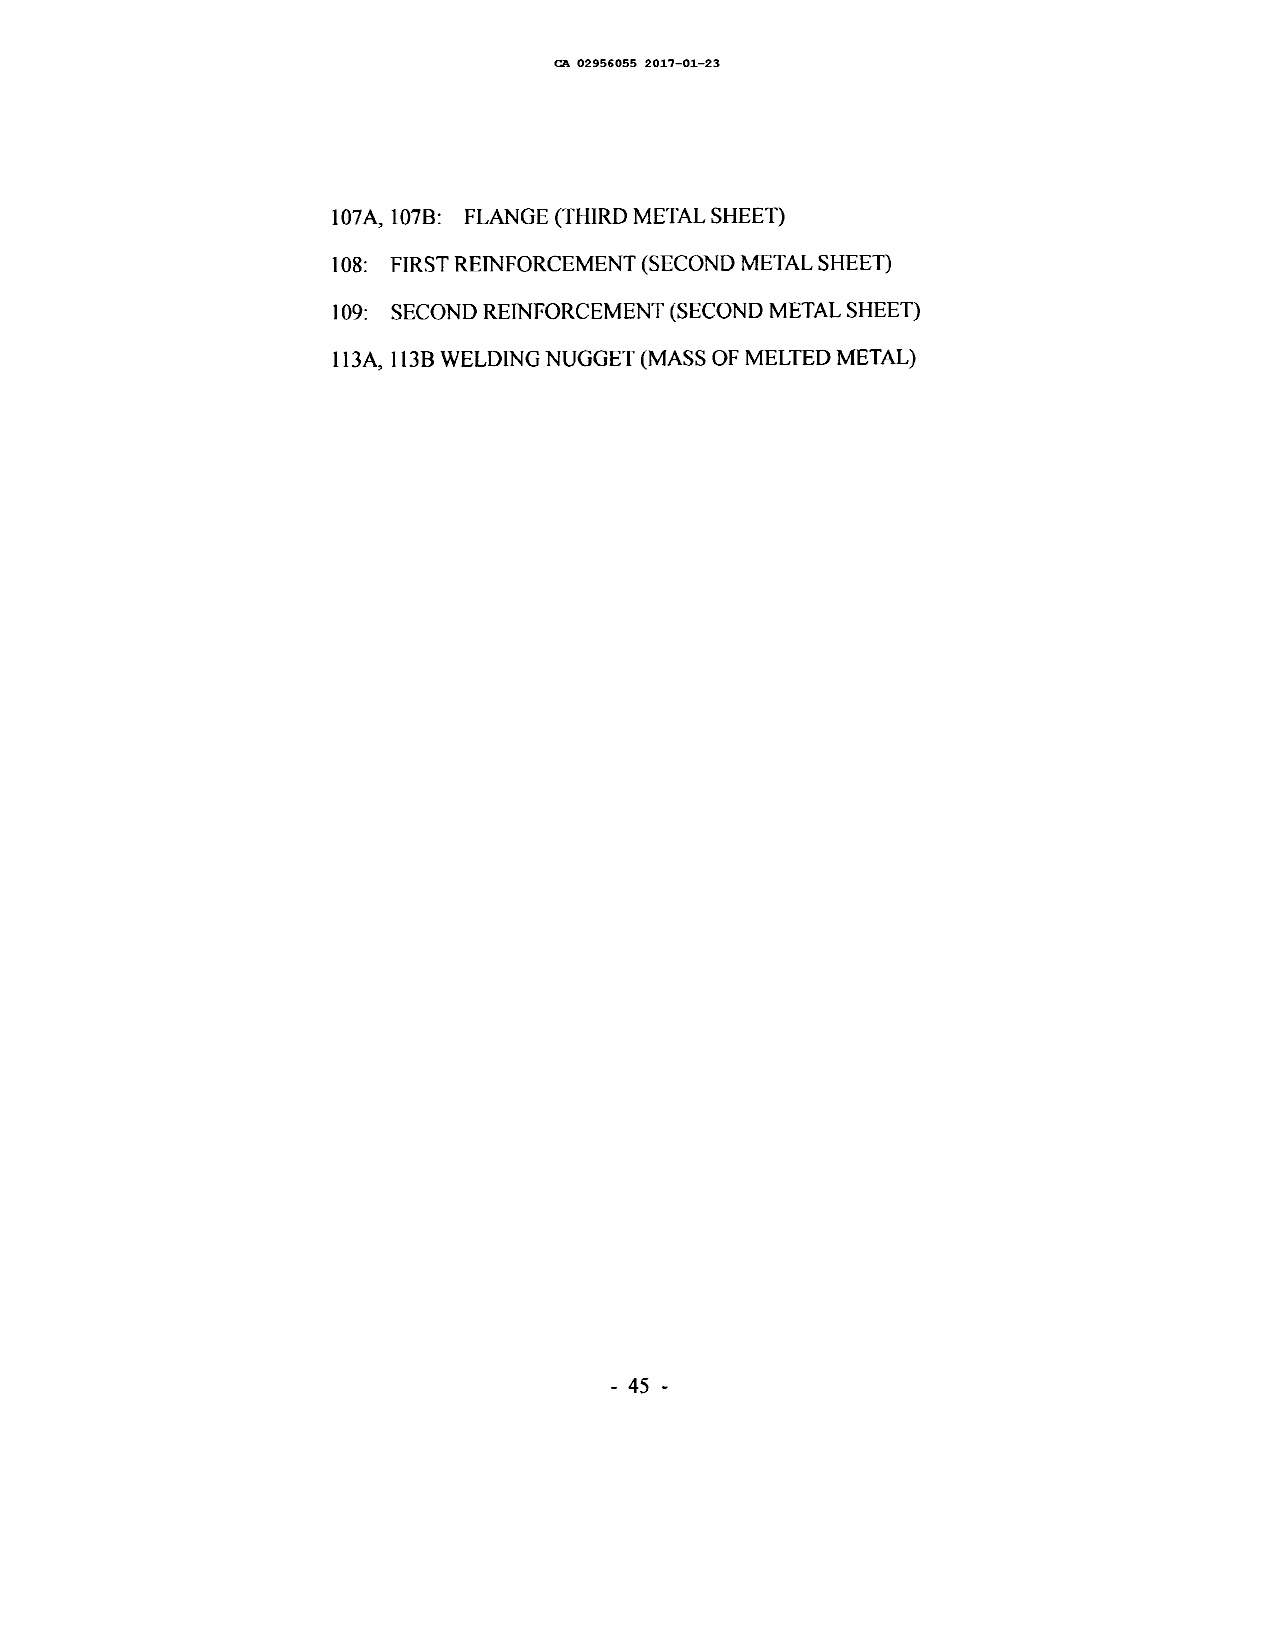 Canadian Patent Document 2956055. Description 20180809. Image 46 of 46